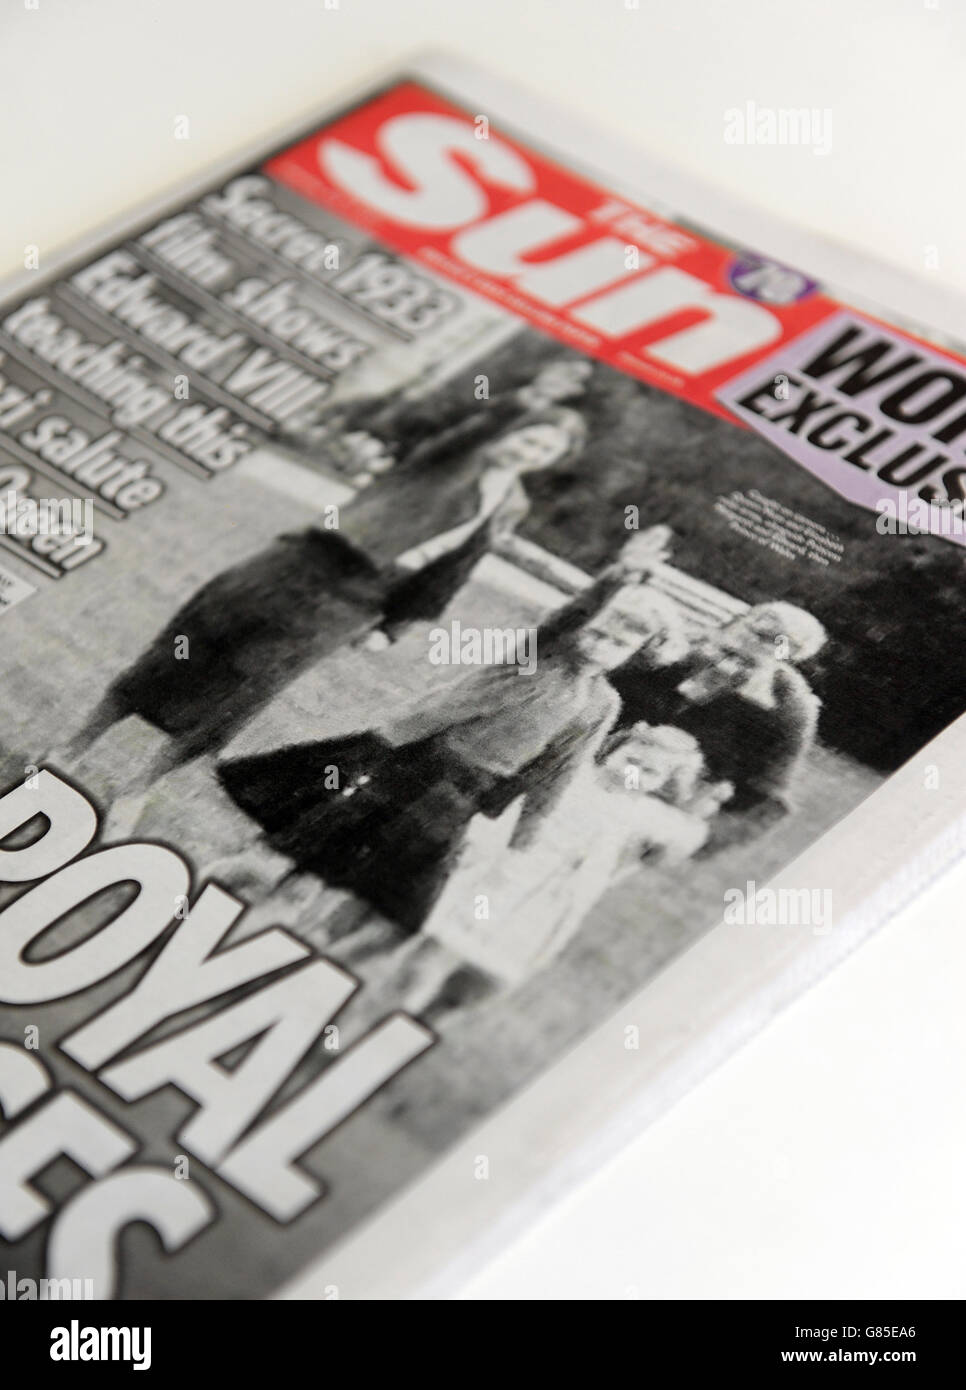 Le journal Sun a publié une couverture avec une photo de la reine Elizabeth de Grande-Bretagne en tant qu'enfant donnant un salut nazi à la famille le 18 juillet 2015. Banque D'Images